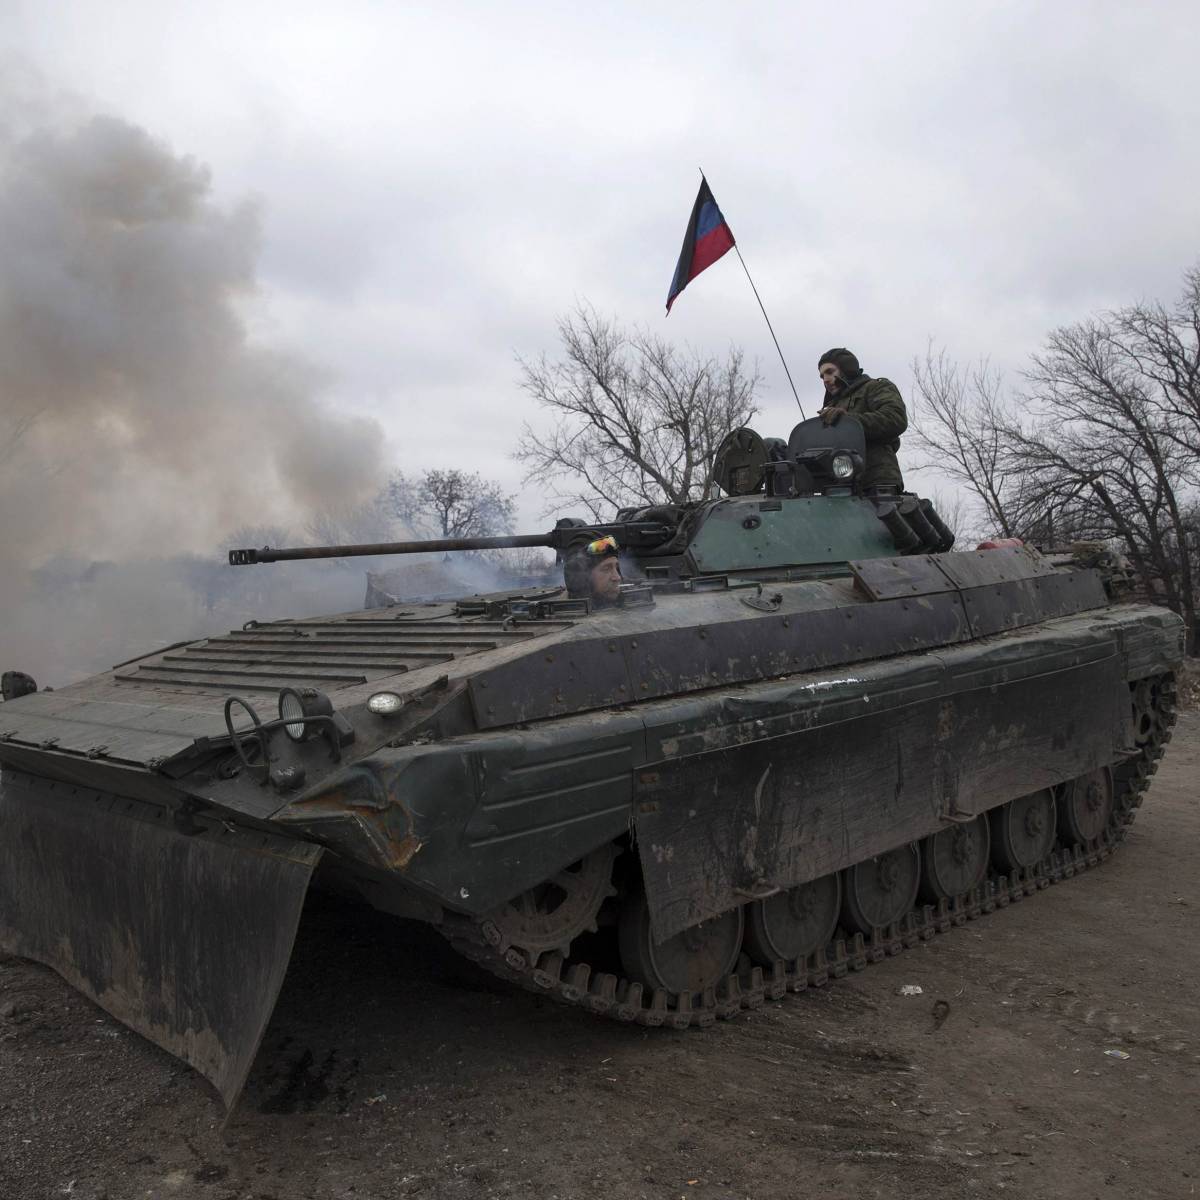 Бойцы ВСУ опубликовали кадры попадания снаряда в БМП ополченцев ДНР